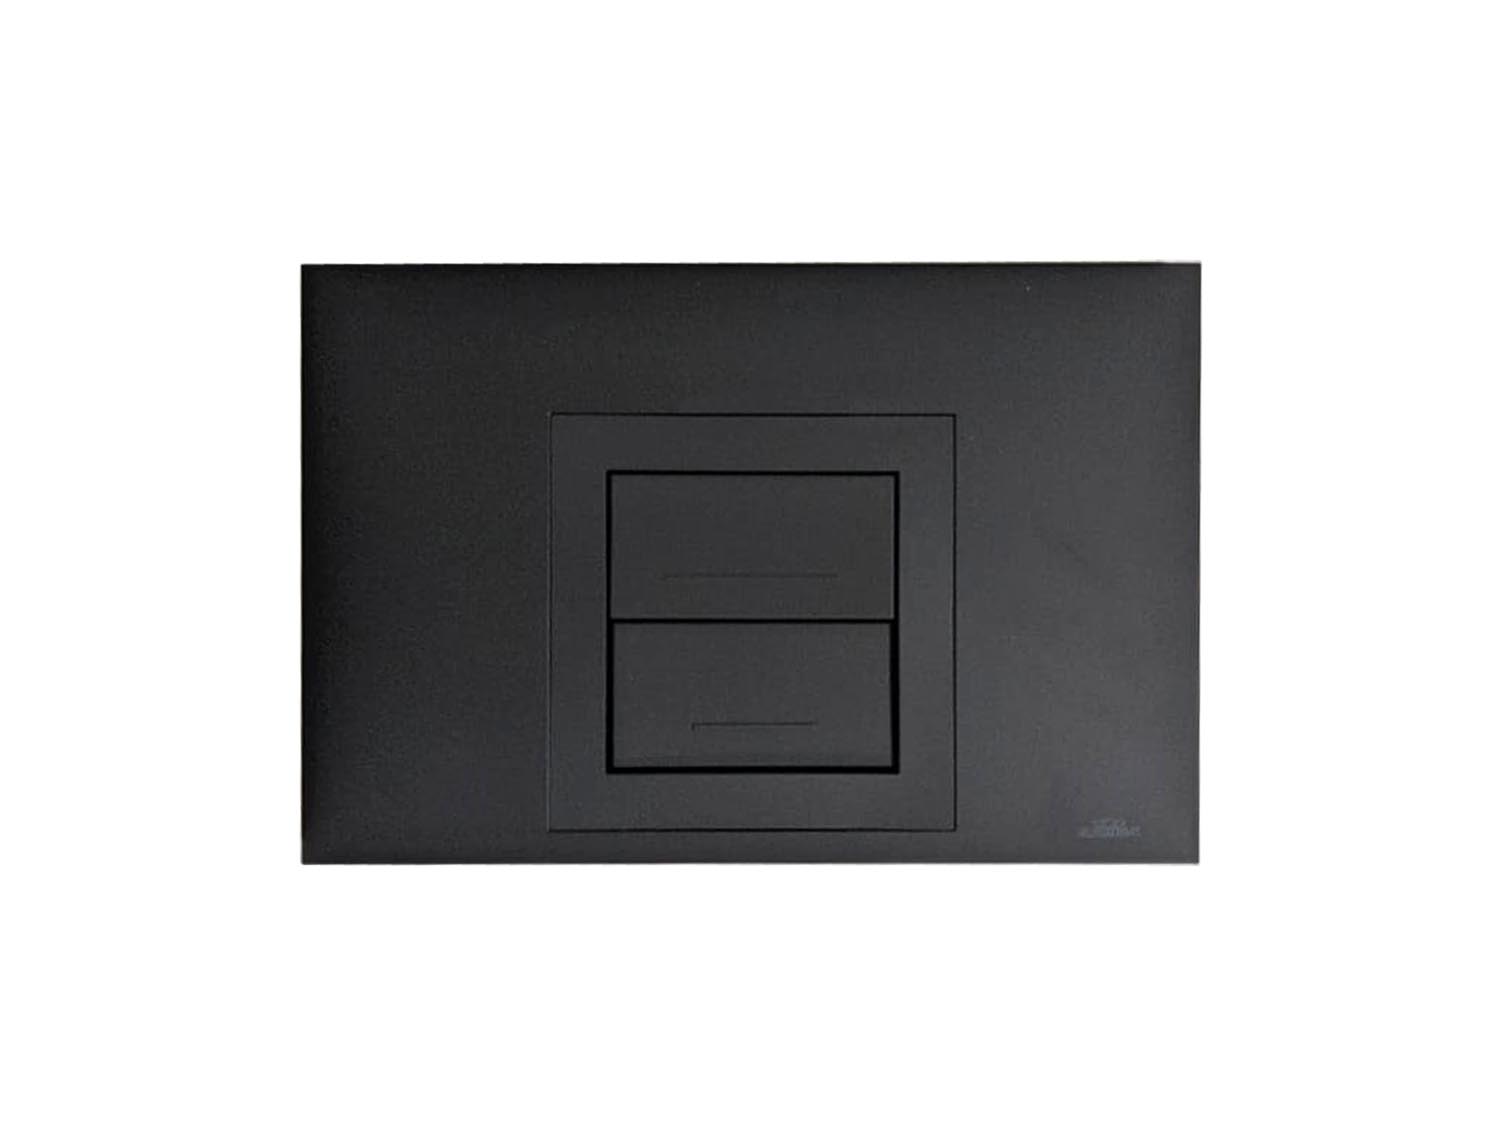 Kariba Aurea Actuator Flush Plate Black